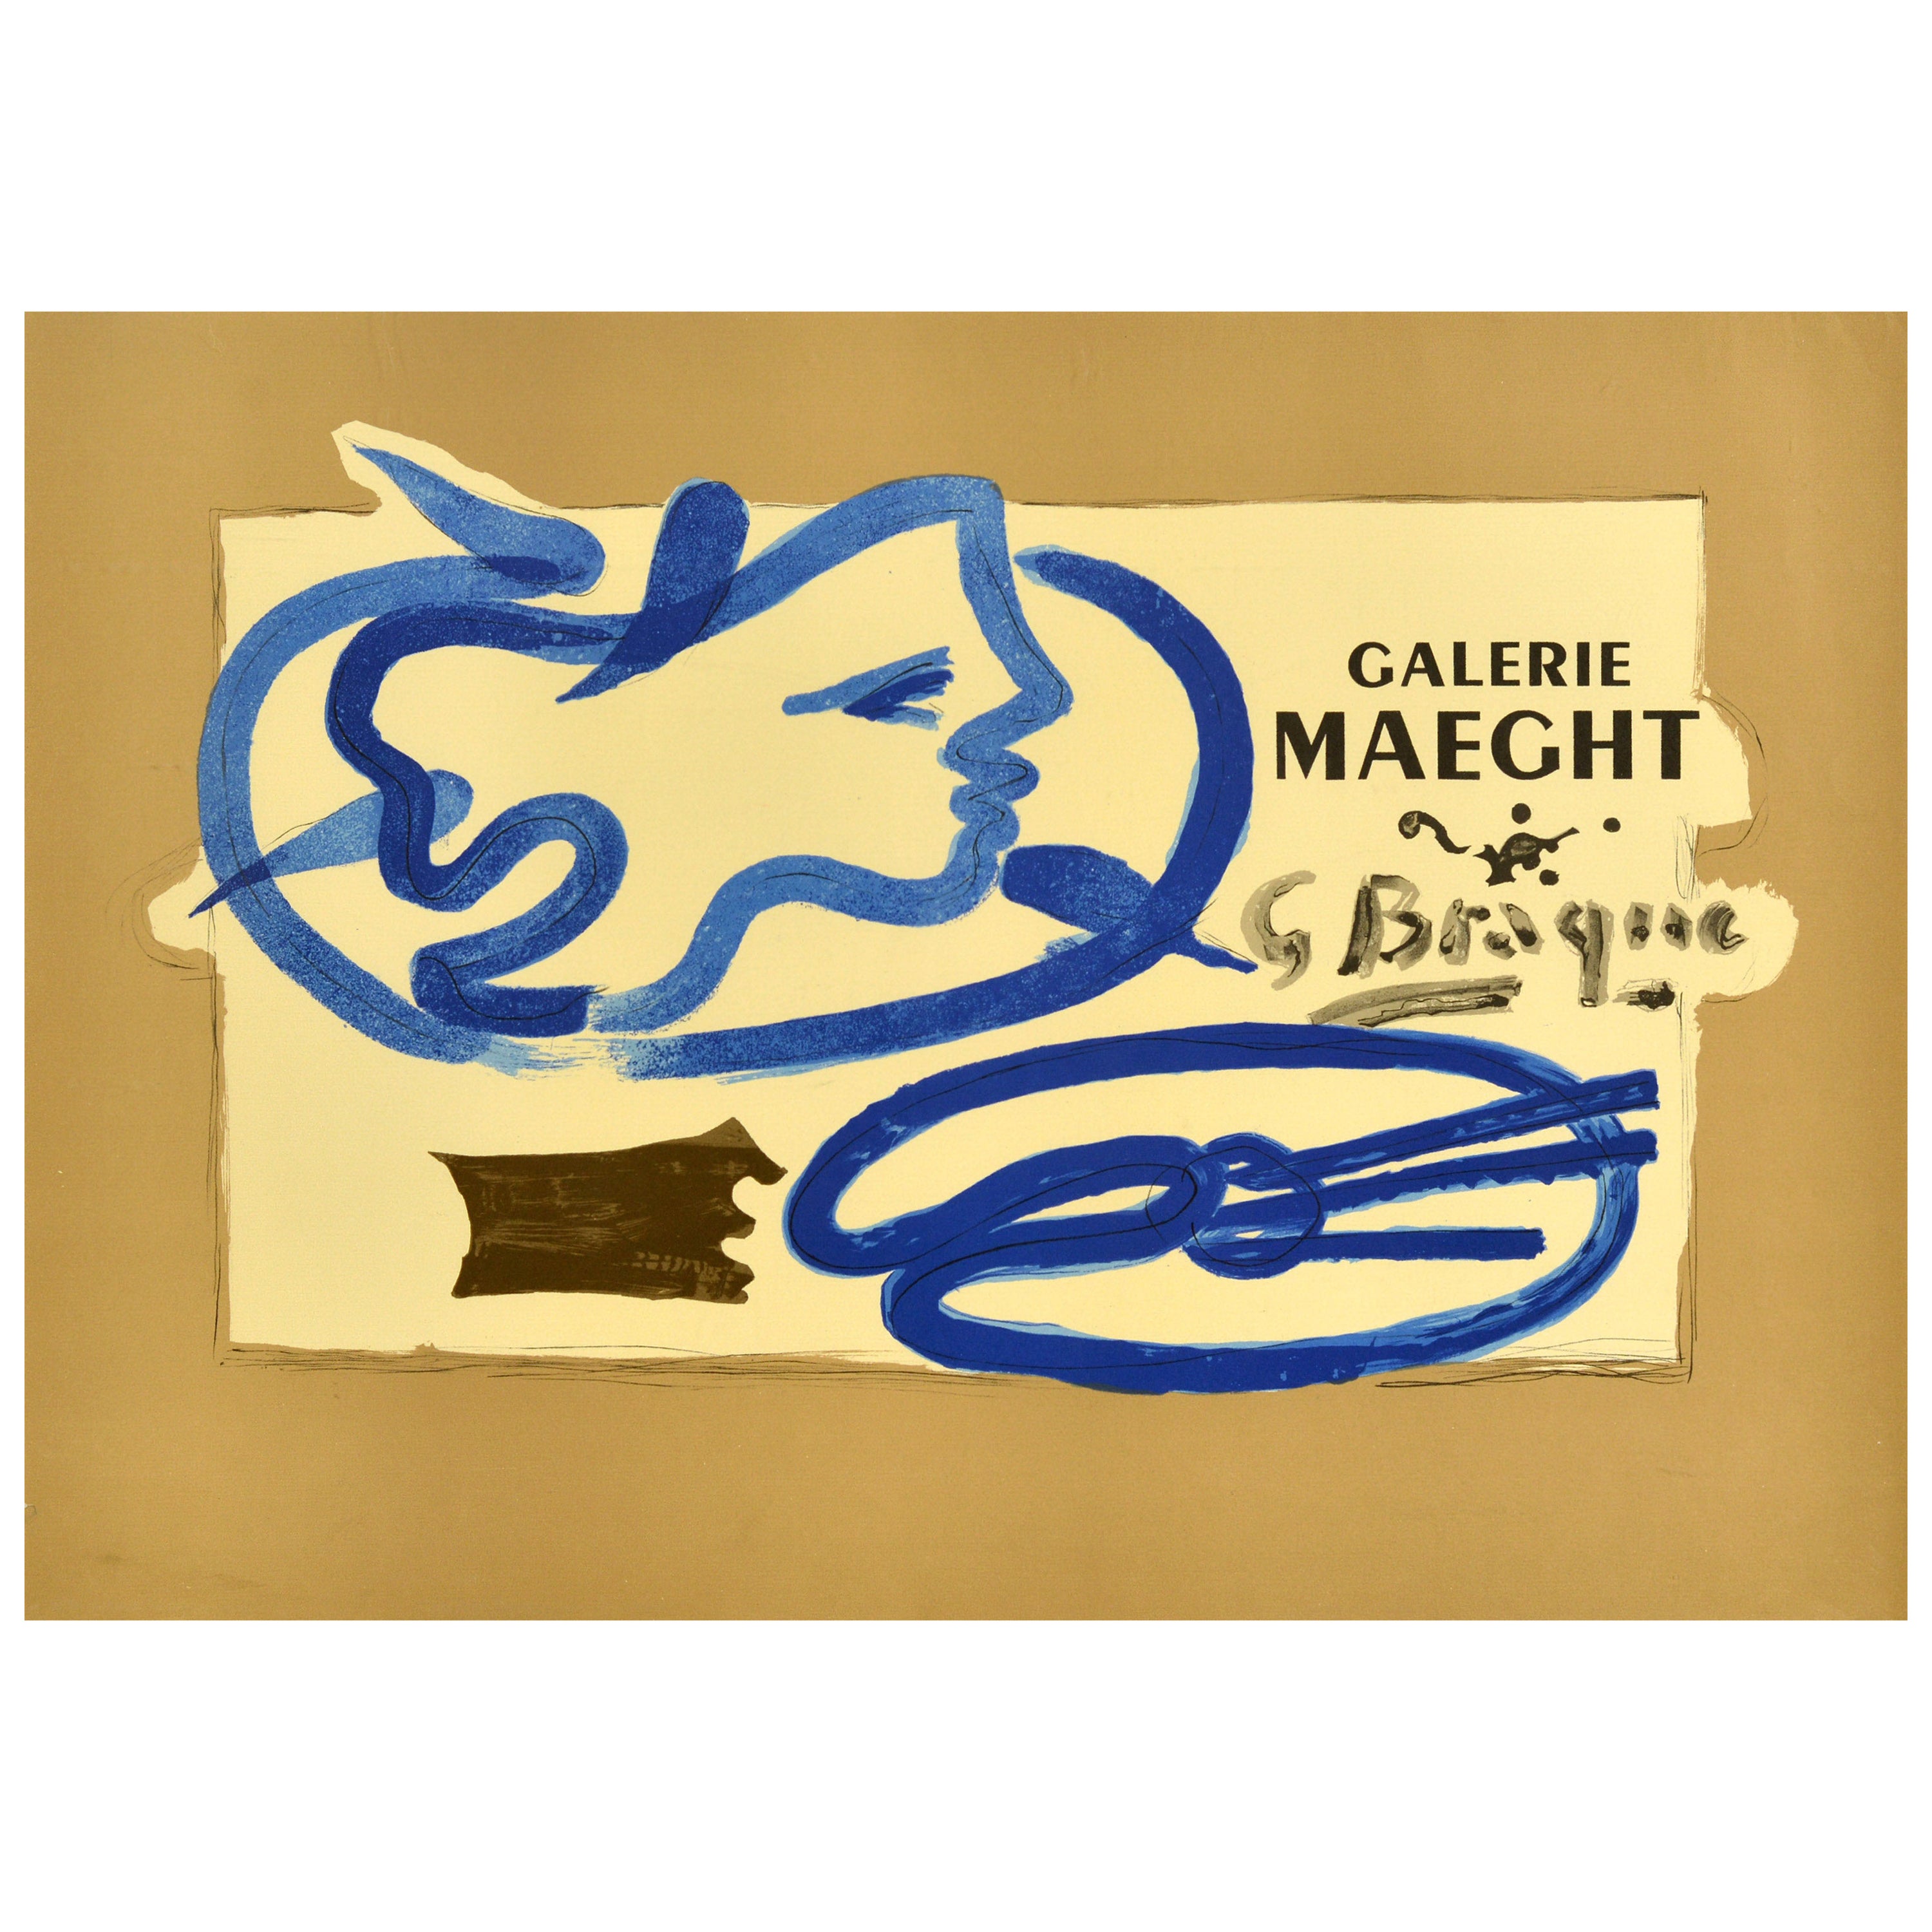 Affiche publicitaire originale d'une exposition d'art vintage Georges Braque Galerie Maeght